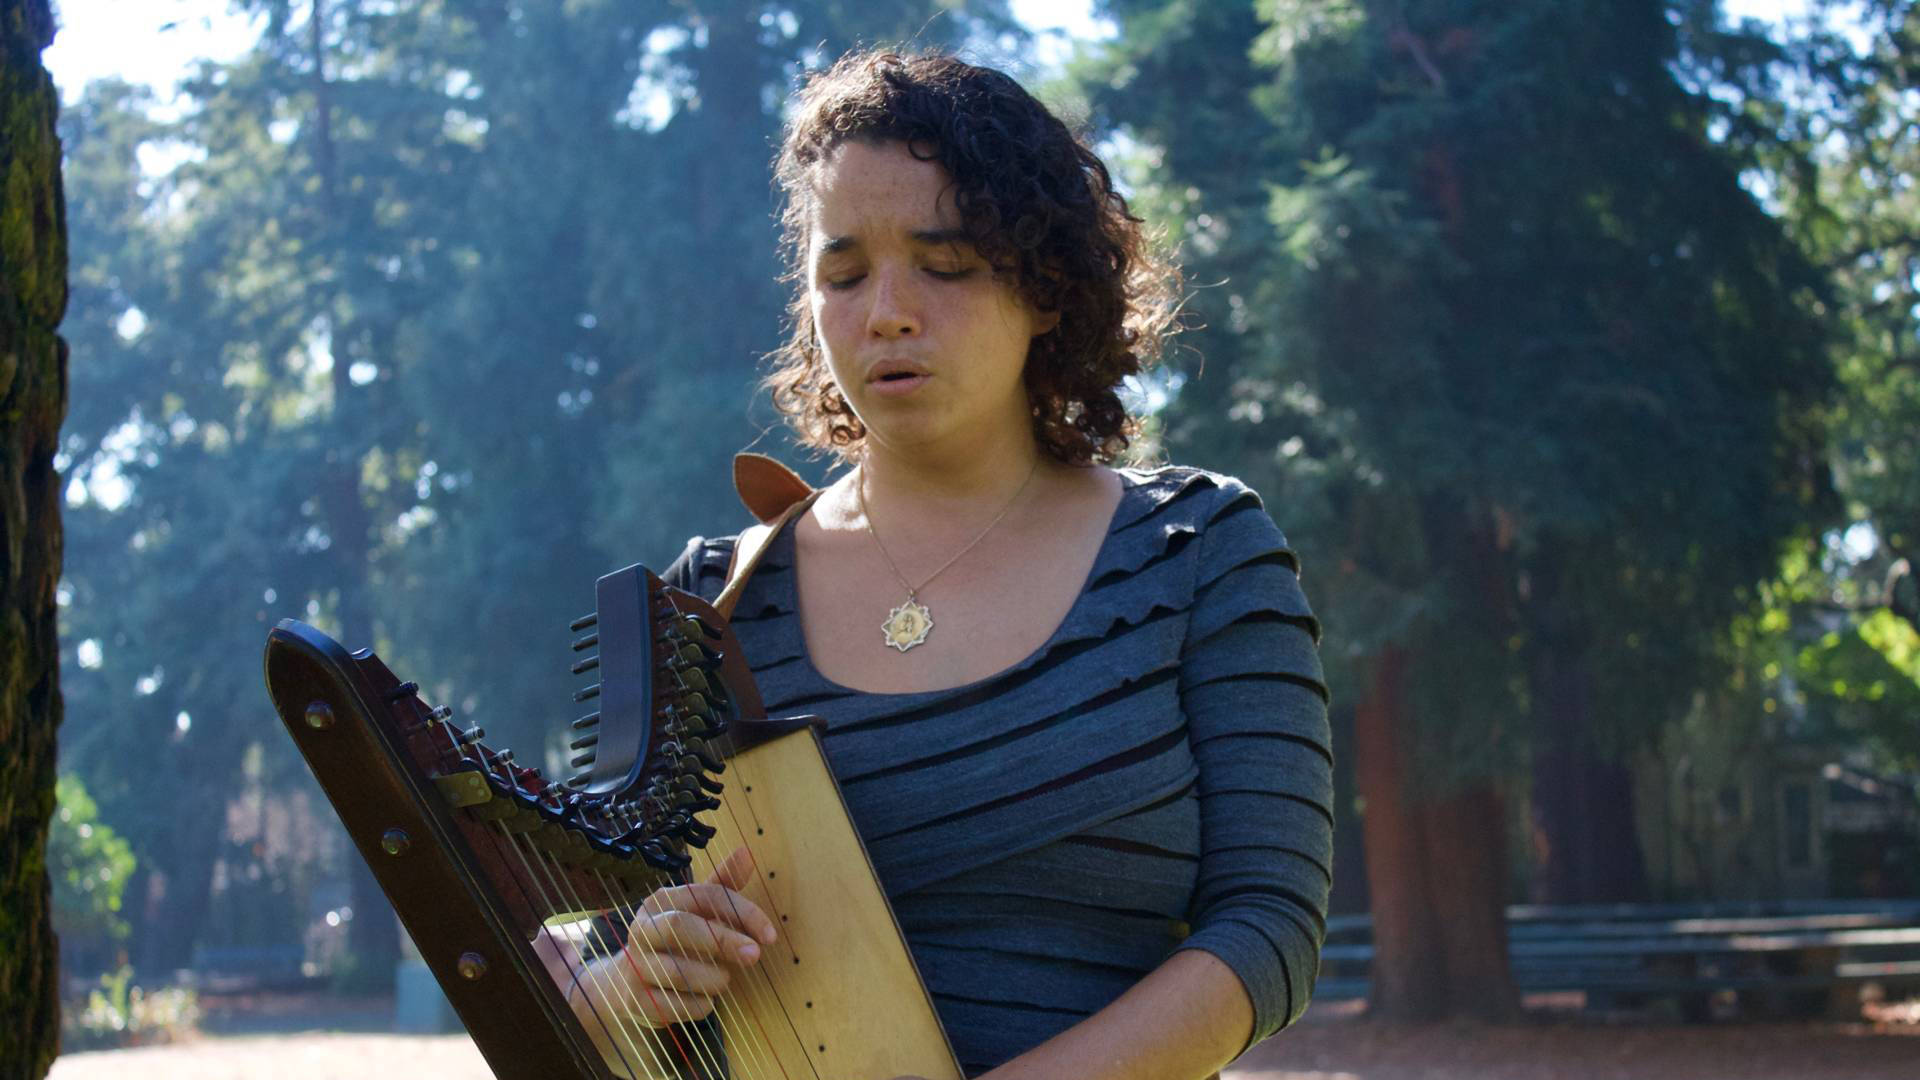 María José Montijo plays her harp at Dimond Park in Oakland. Audrey Garces